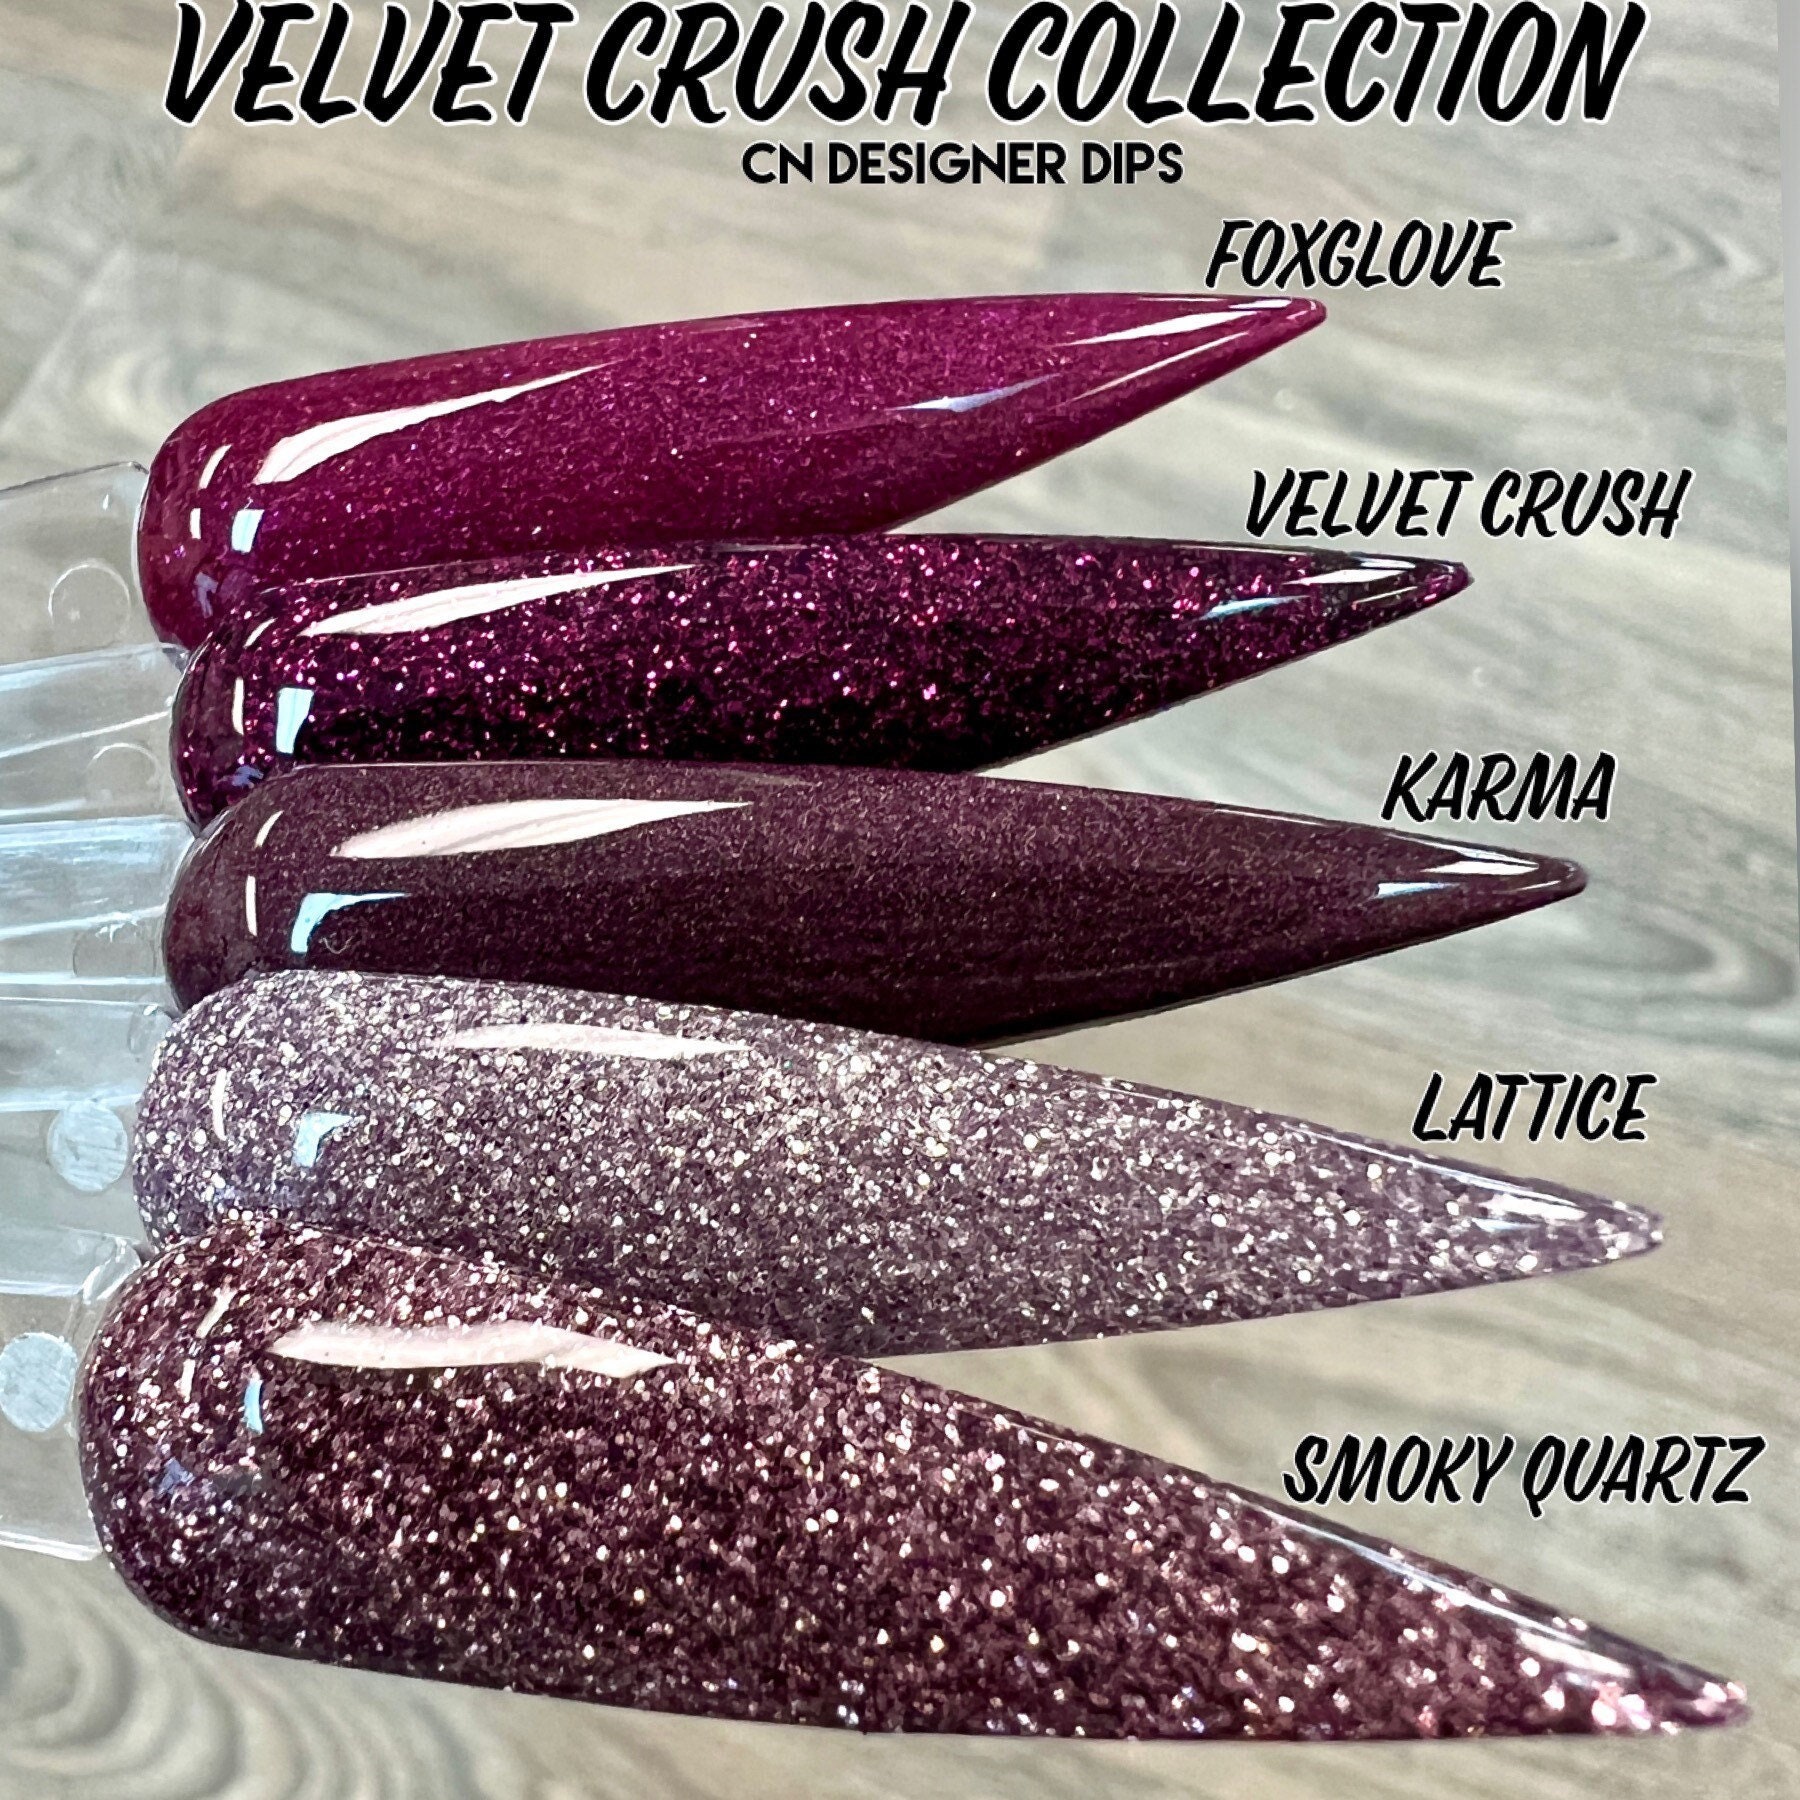 Velvet Crush Collection - Tauchpulver, Nageltauchpulver, Tauchpulver Für Nägel, Nagelpulver, Acryl, Nageldip, Nagelacryl von CNDesignerDips